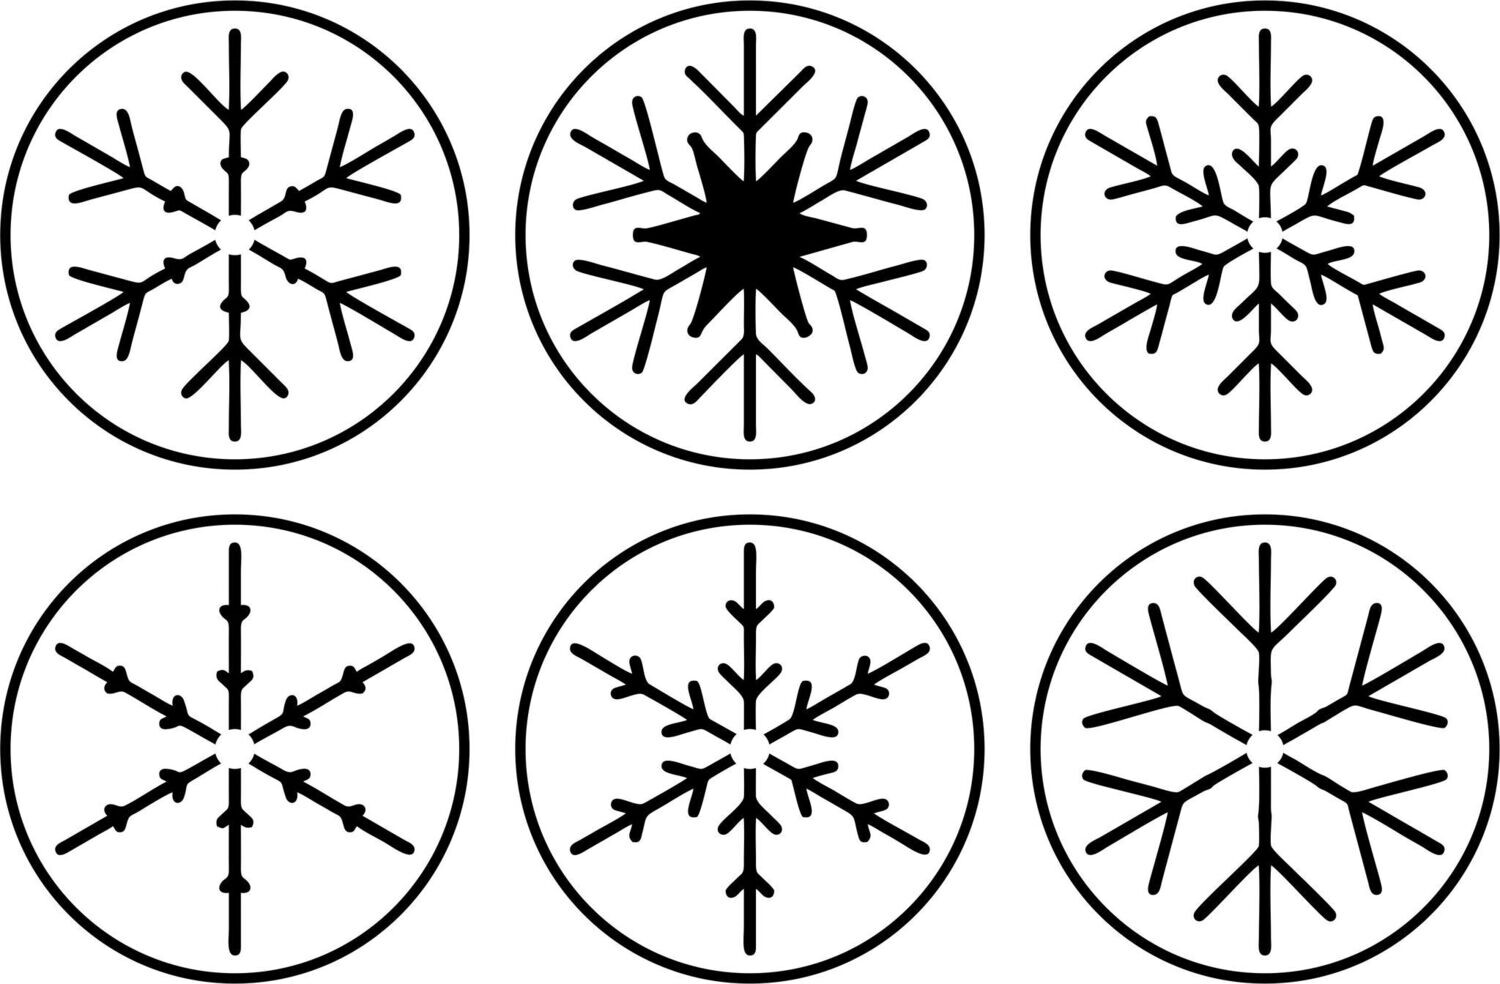 Mini Snowflakes Stencil Set of 6 - JRV Stencil Co